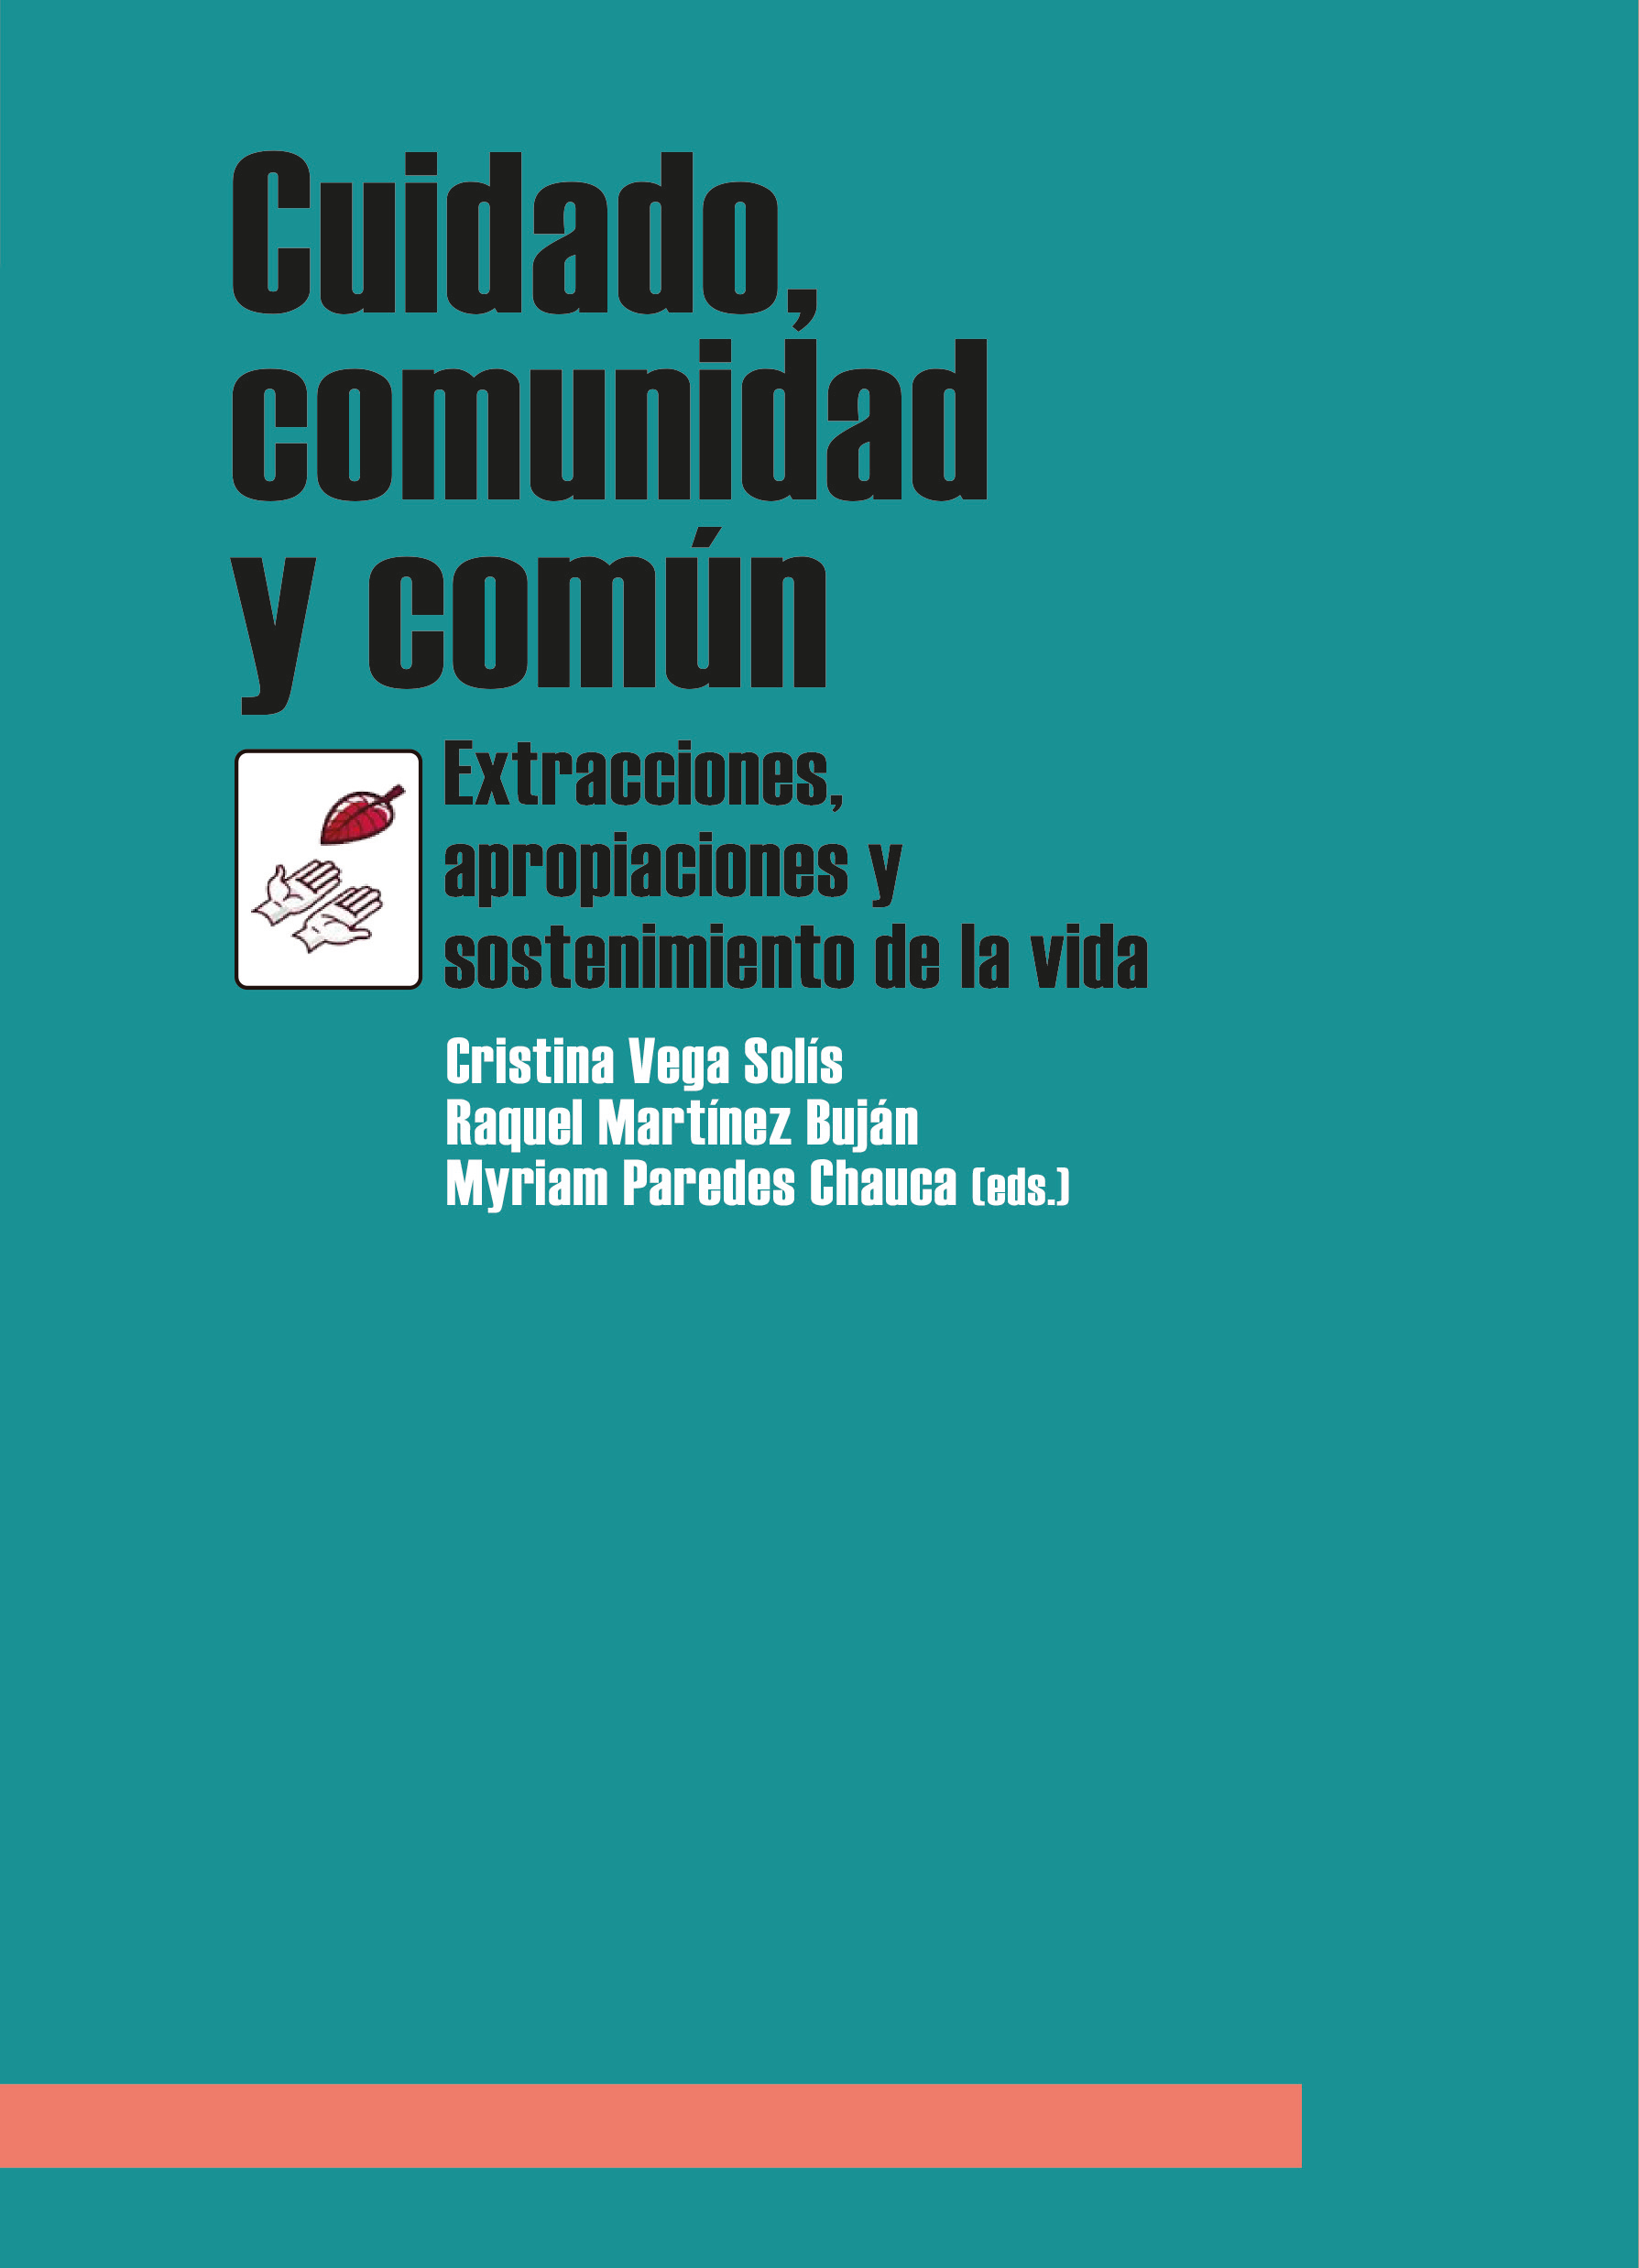 Imagen de portada del libro Cuidado, comunidad y común